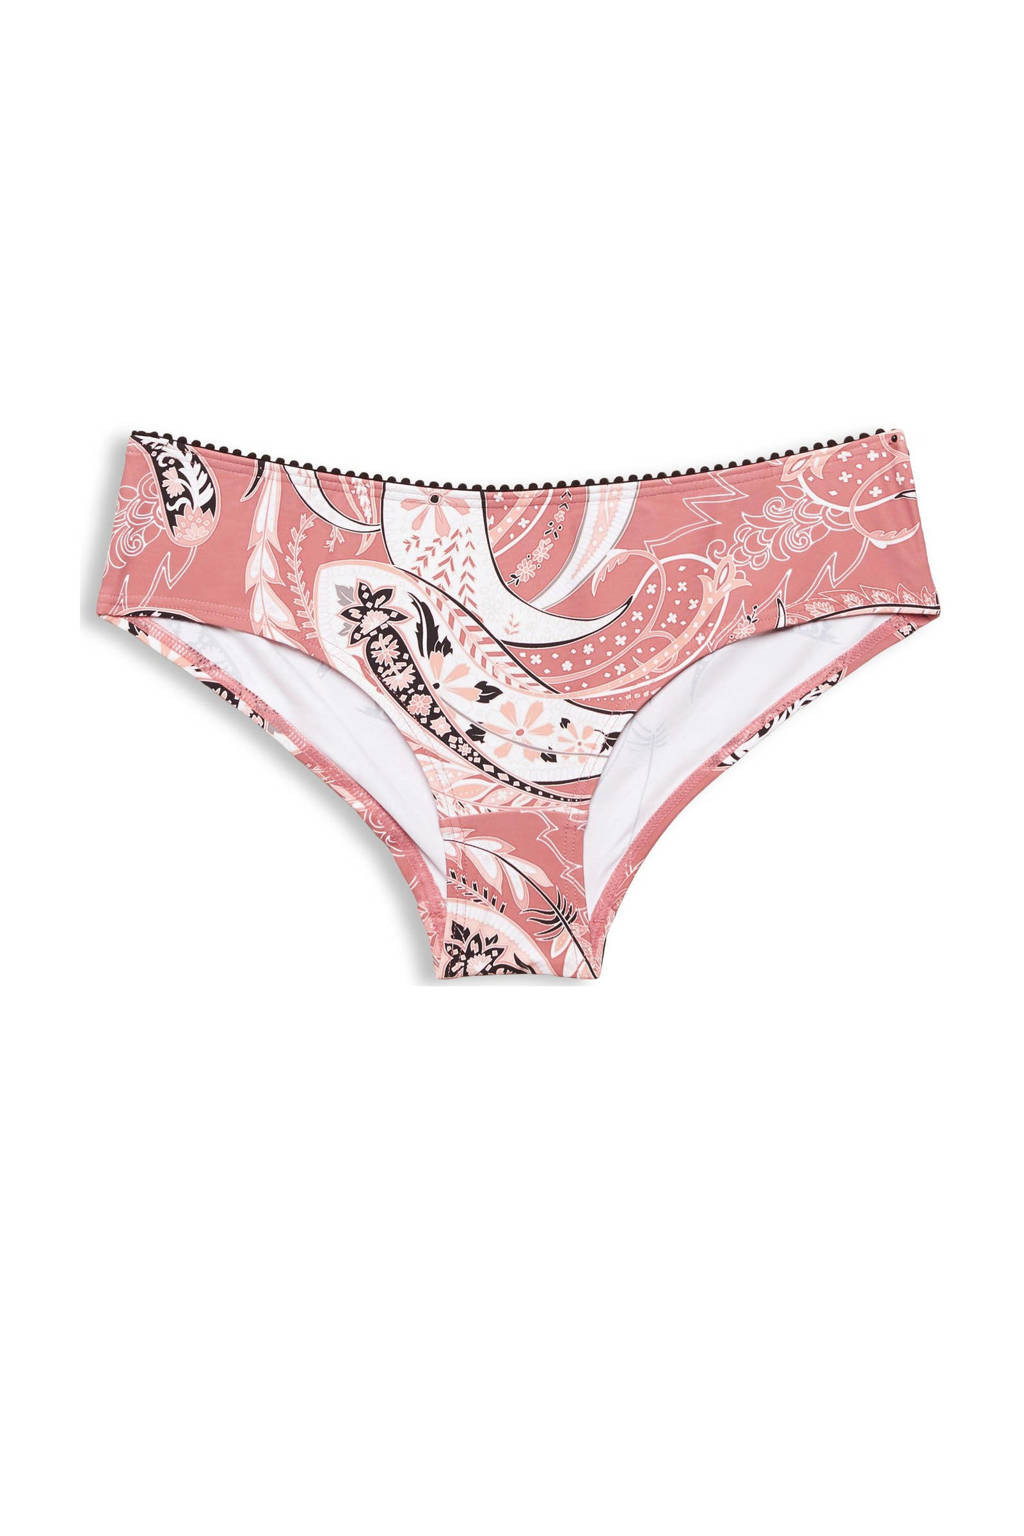 ESPRIT Women Beach hipster bikinibroekje met paisley print roze/wit